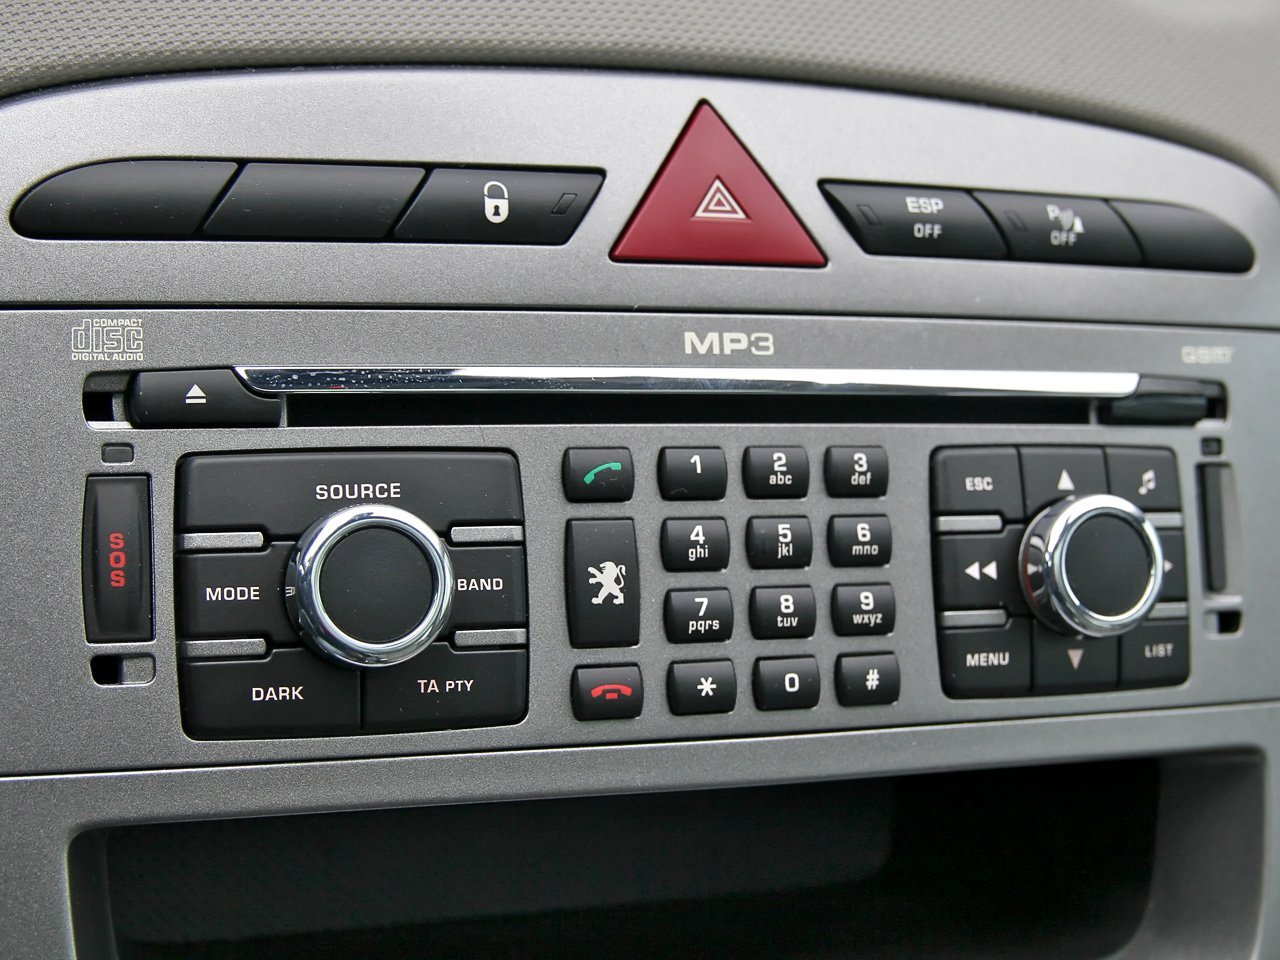 хэтчбек 5 дв. Peugeot 308 2008 - 2011г выпуска модификация 1.4 MT (95 л.с.)